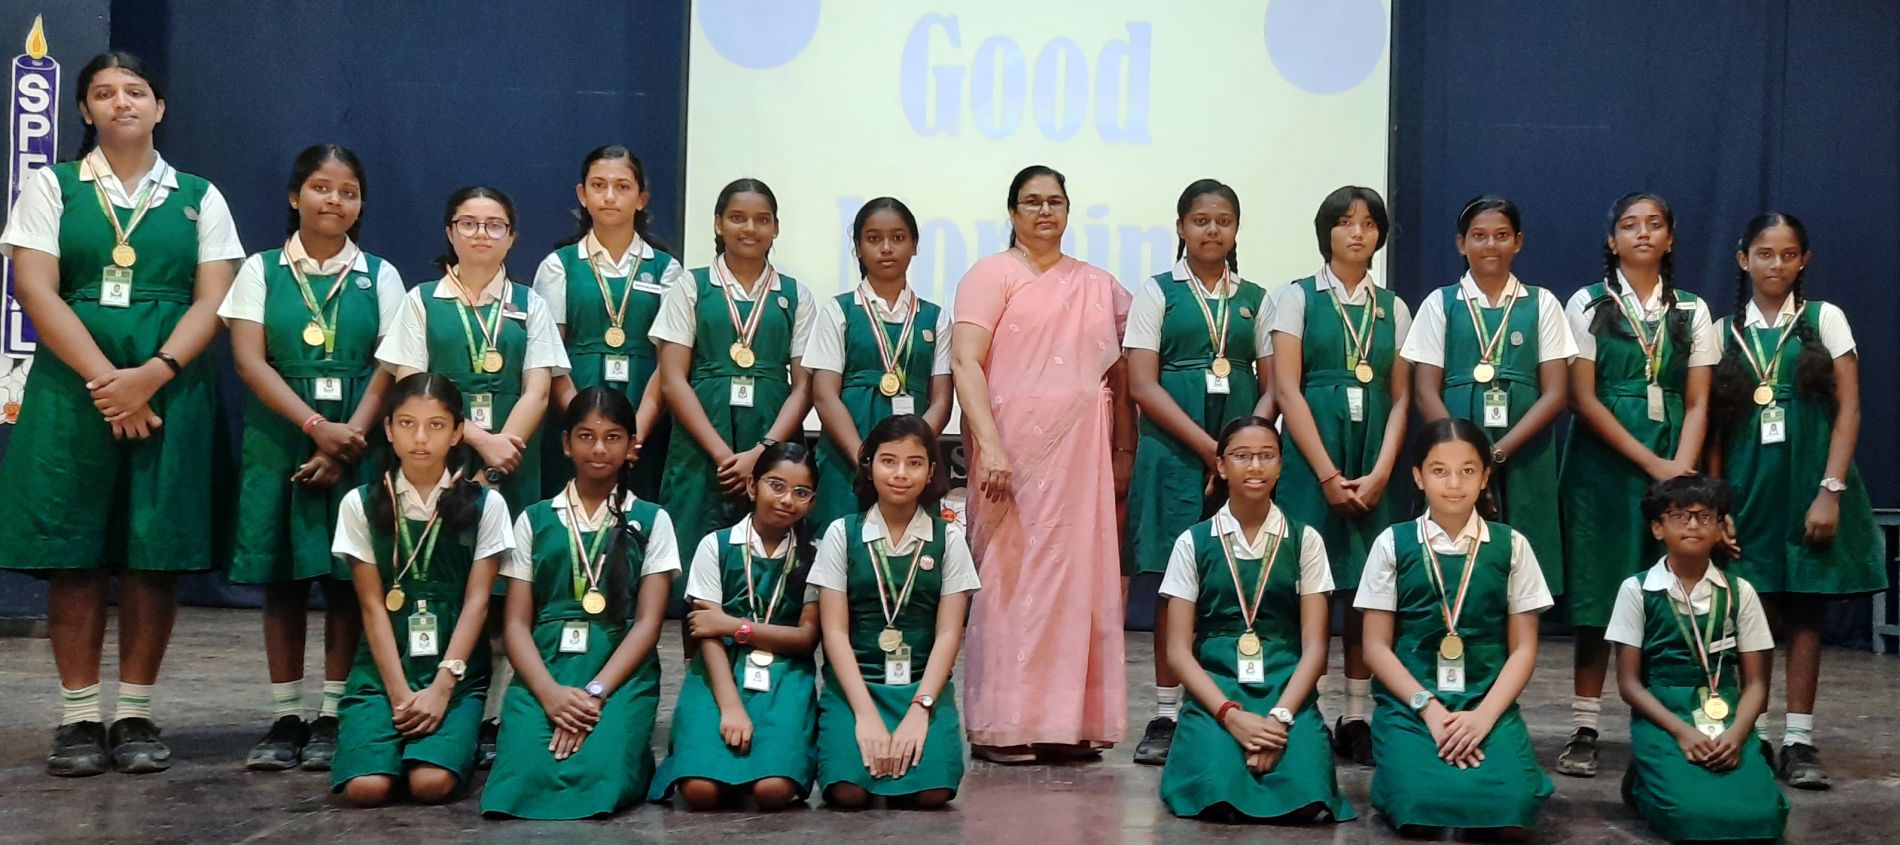 presentation convent school kodaikanal